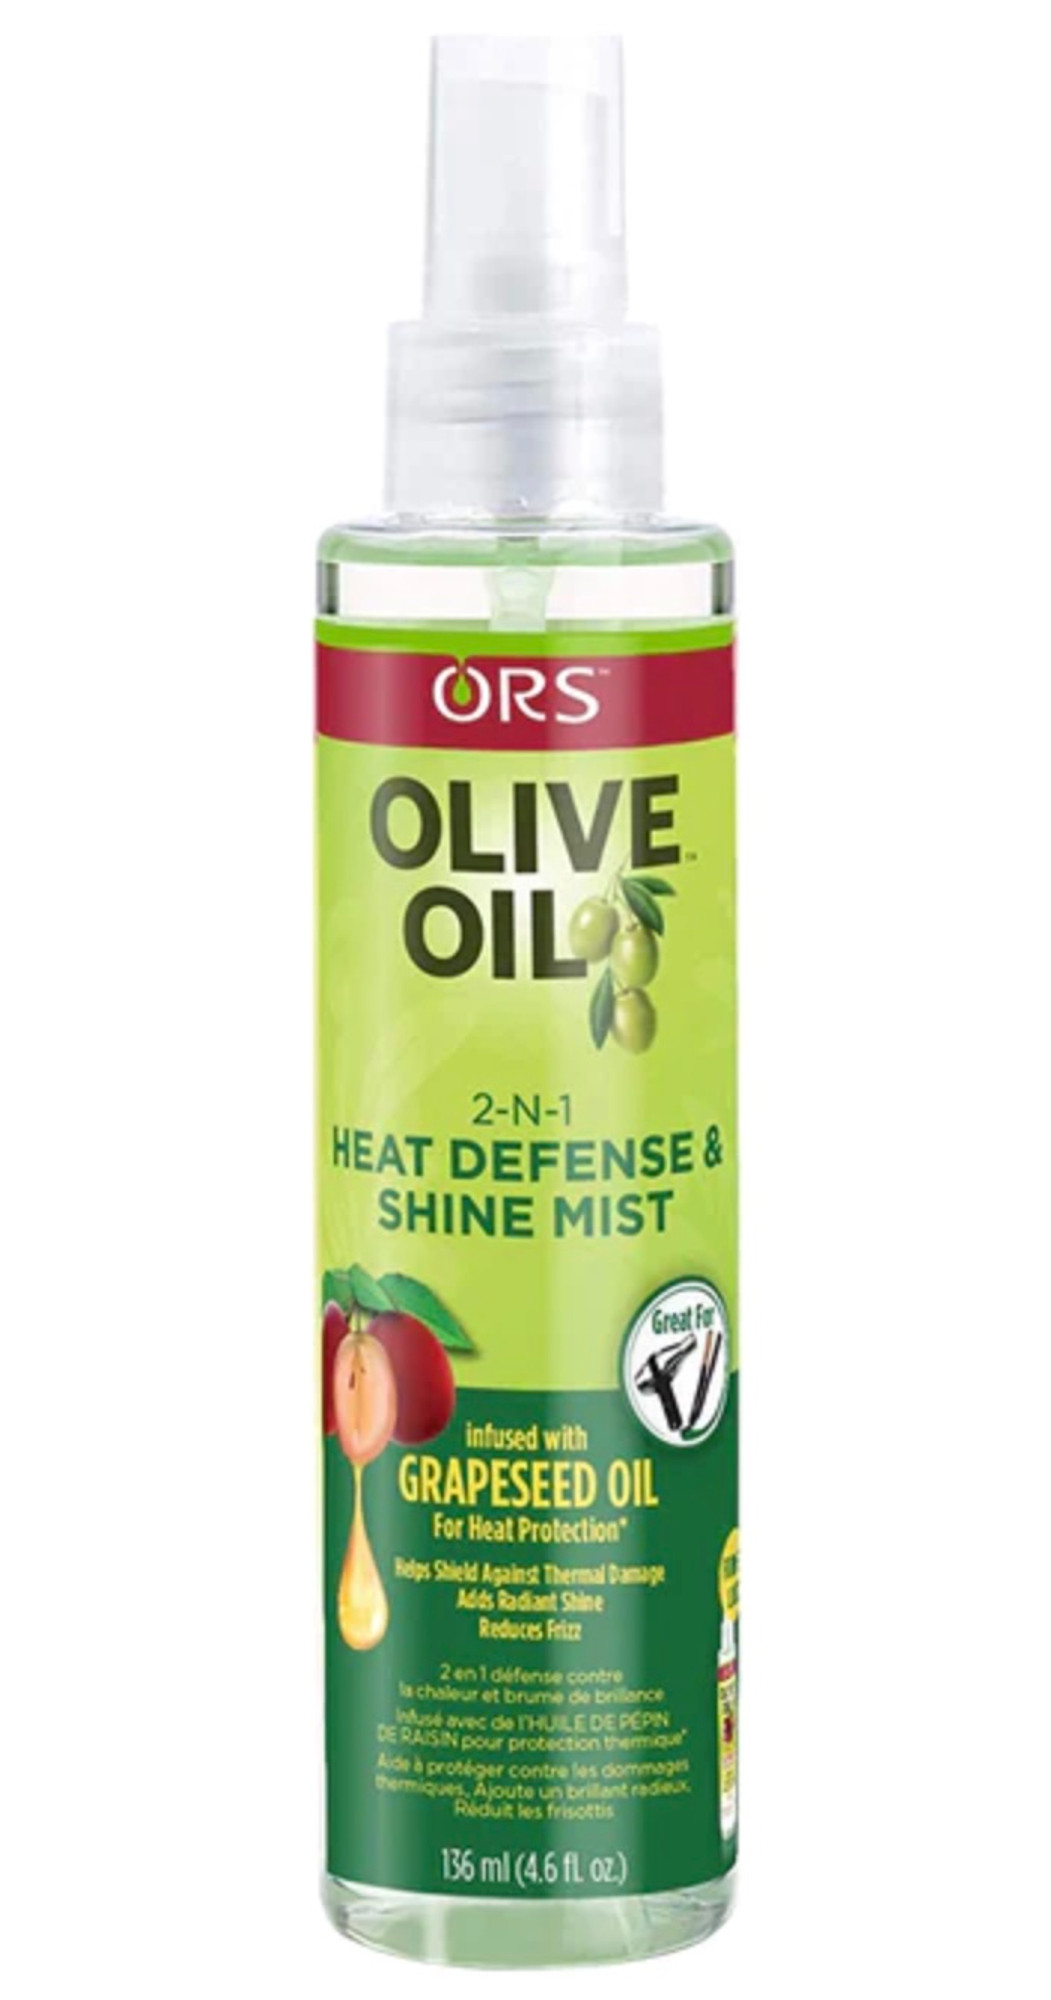 ORS Olive Oil 2-n-1 Shine Mist & Heat Defense